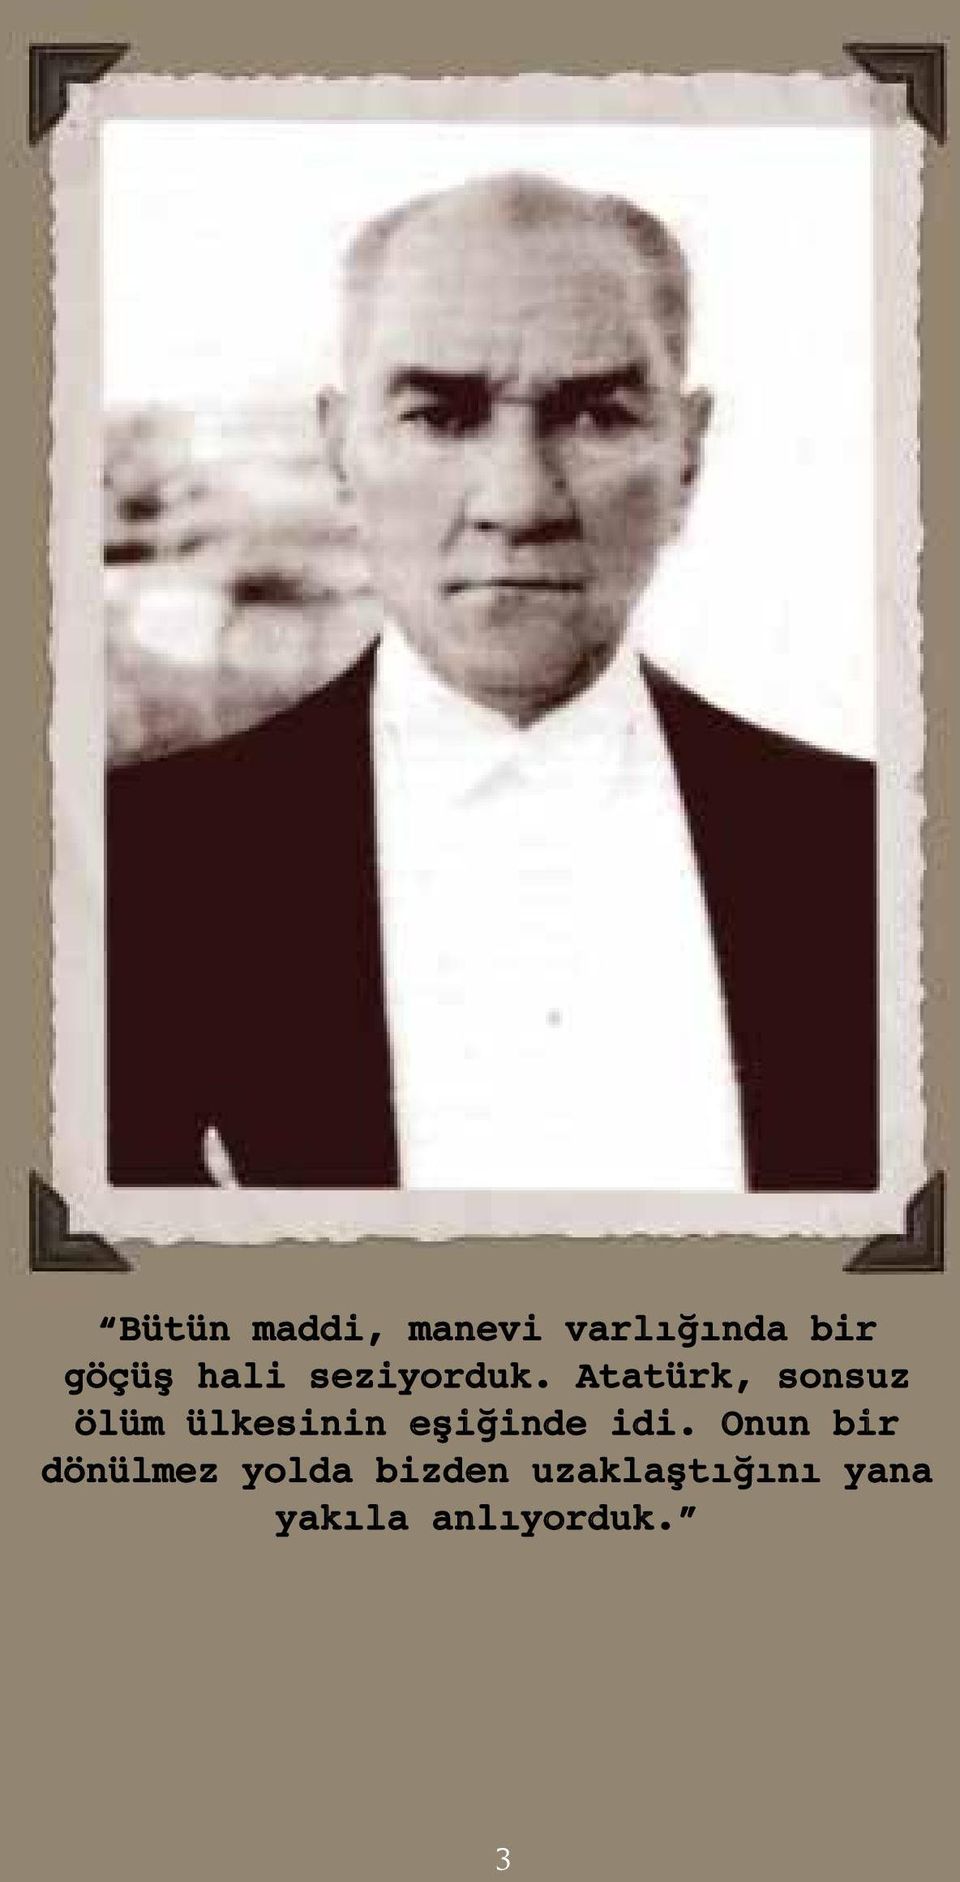 Atatürk, sonsuz ölüm ülkesinin eşiğinde idi.